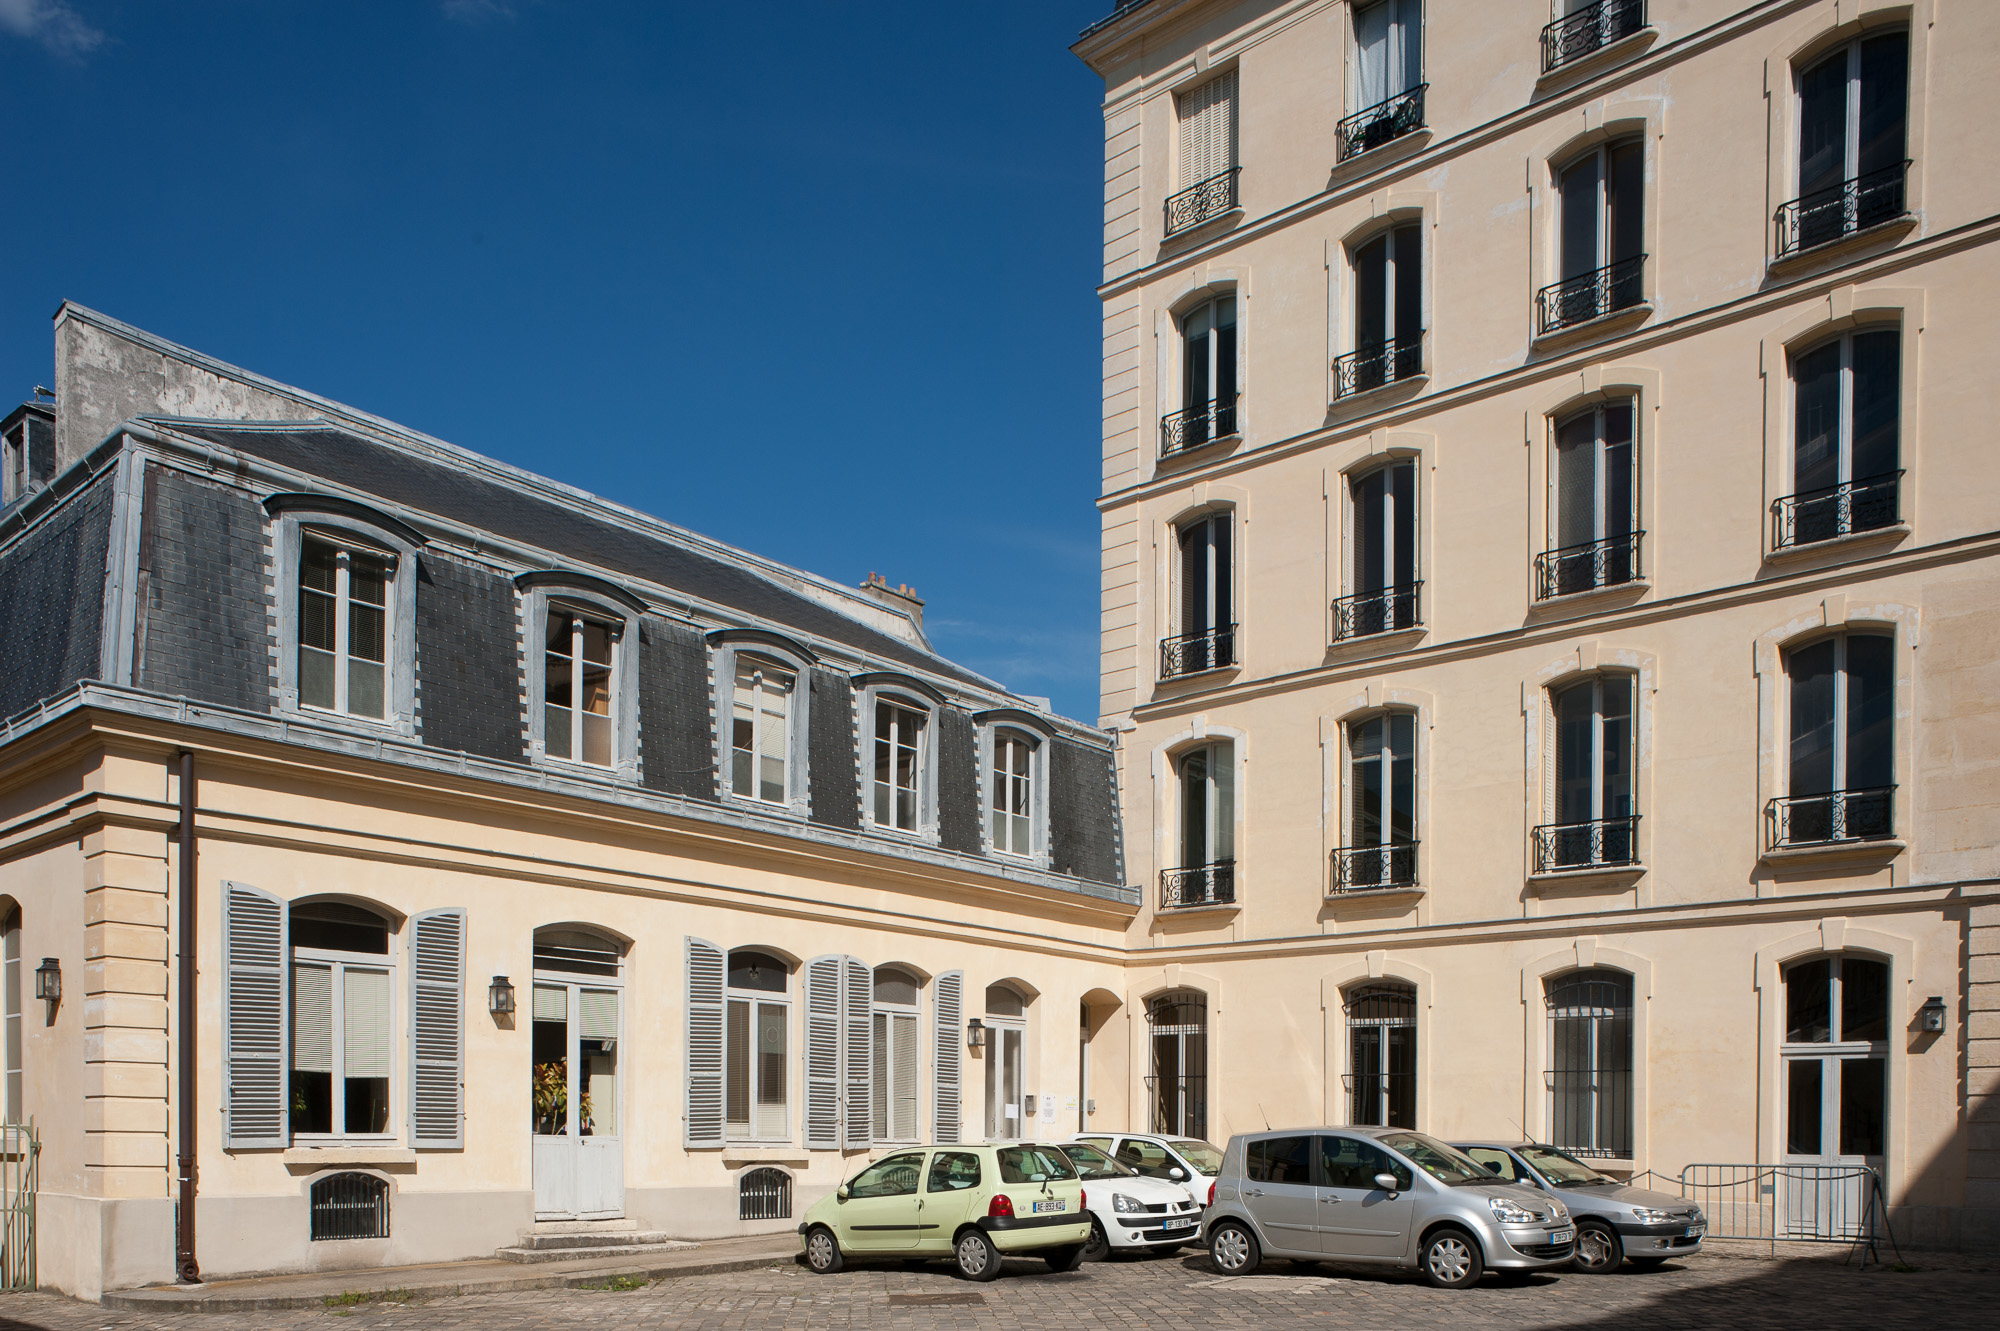 5, rue des réservoirs. L'hôtel particulier de Madame Pompadour resté dans son état du 18ème siècle.